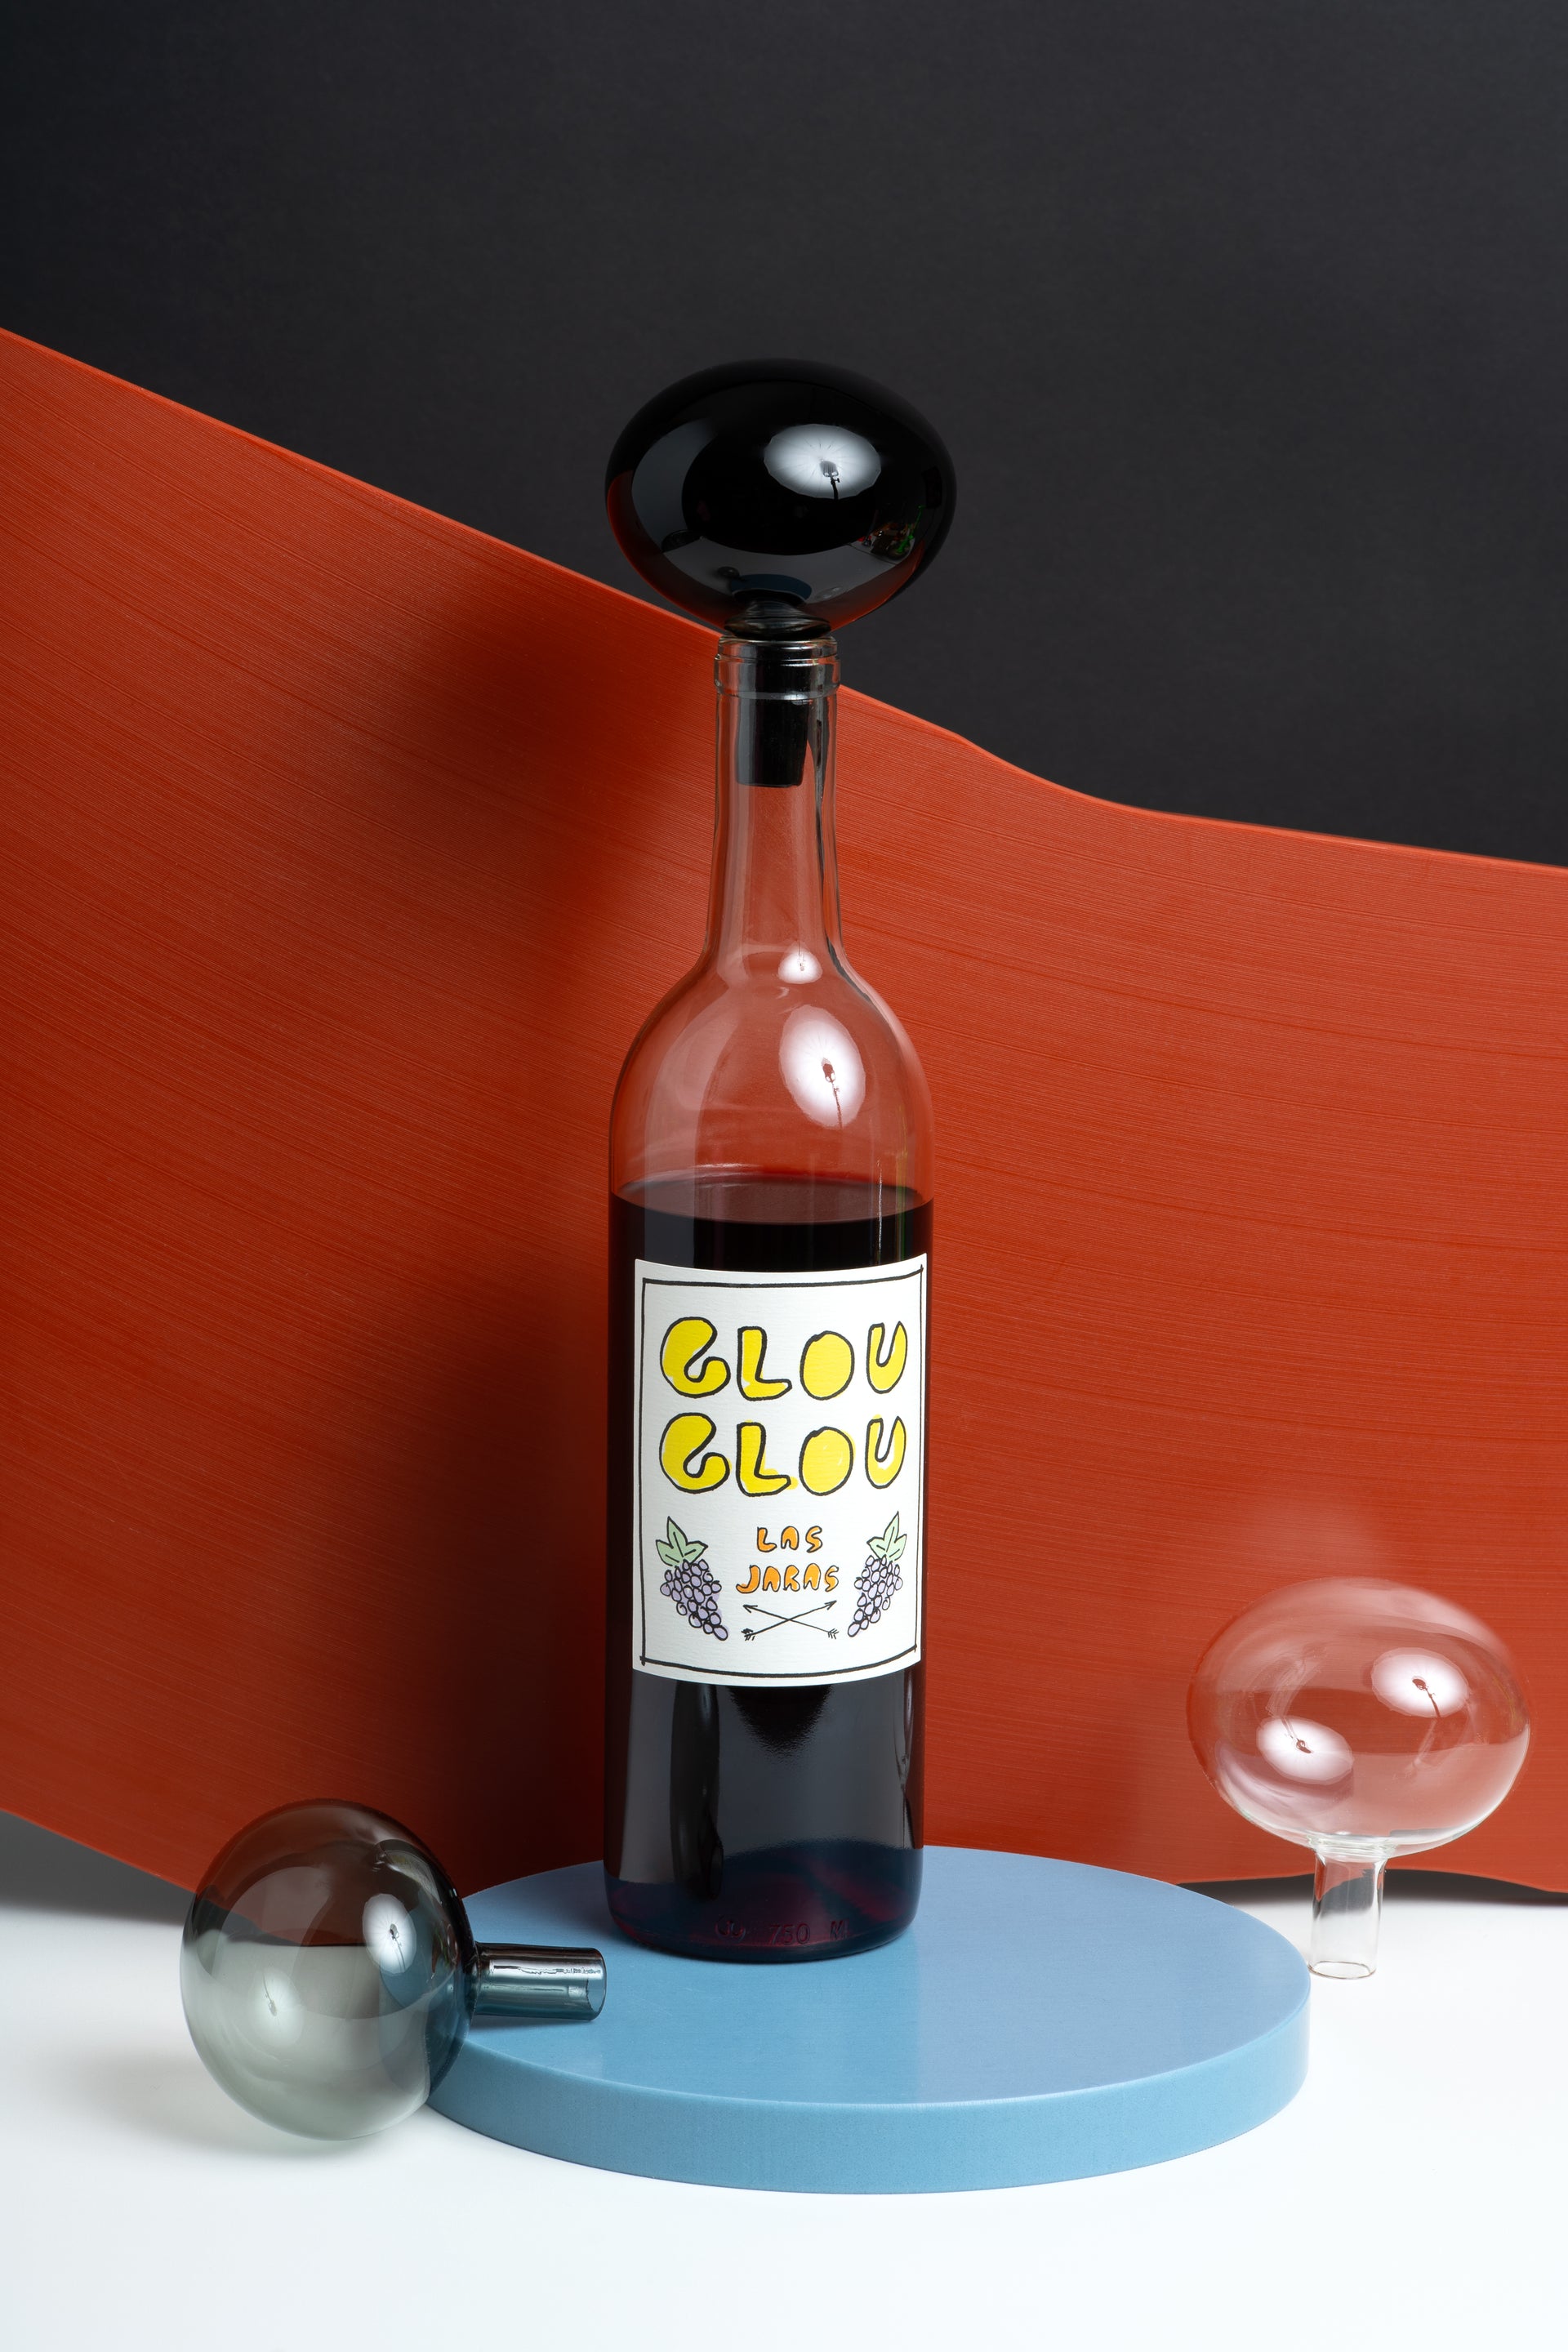 Bottle Stop Black 1 ?v=1615299154&width=1920